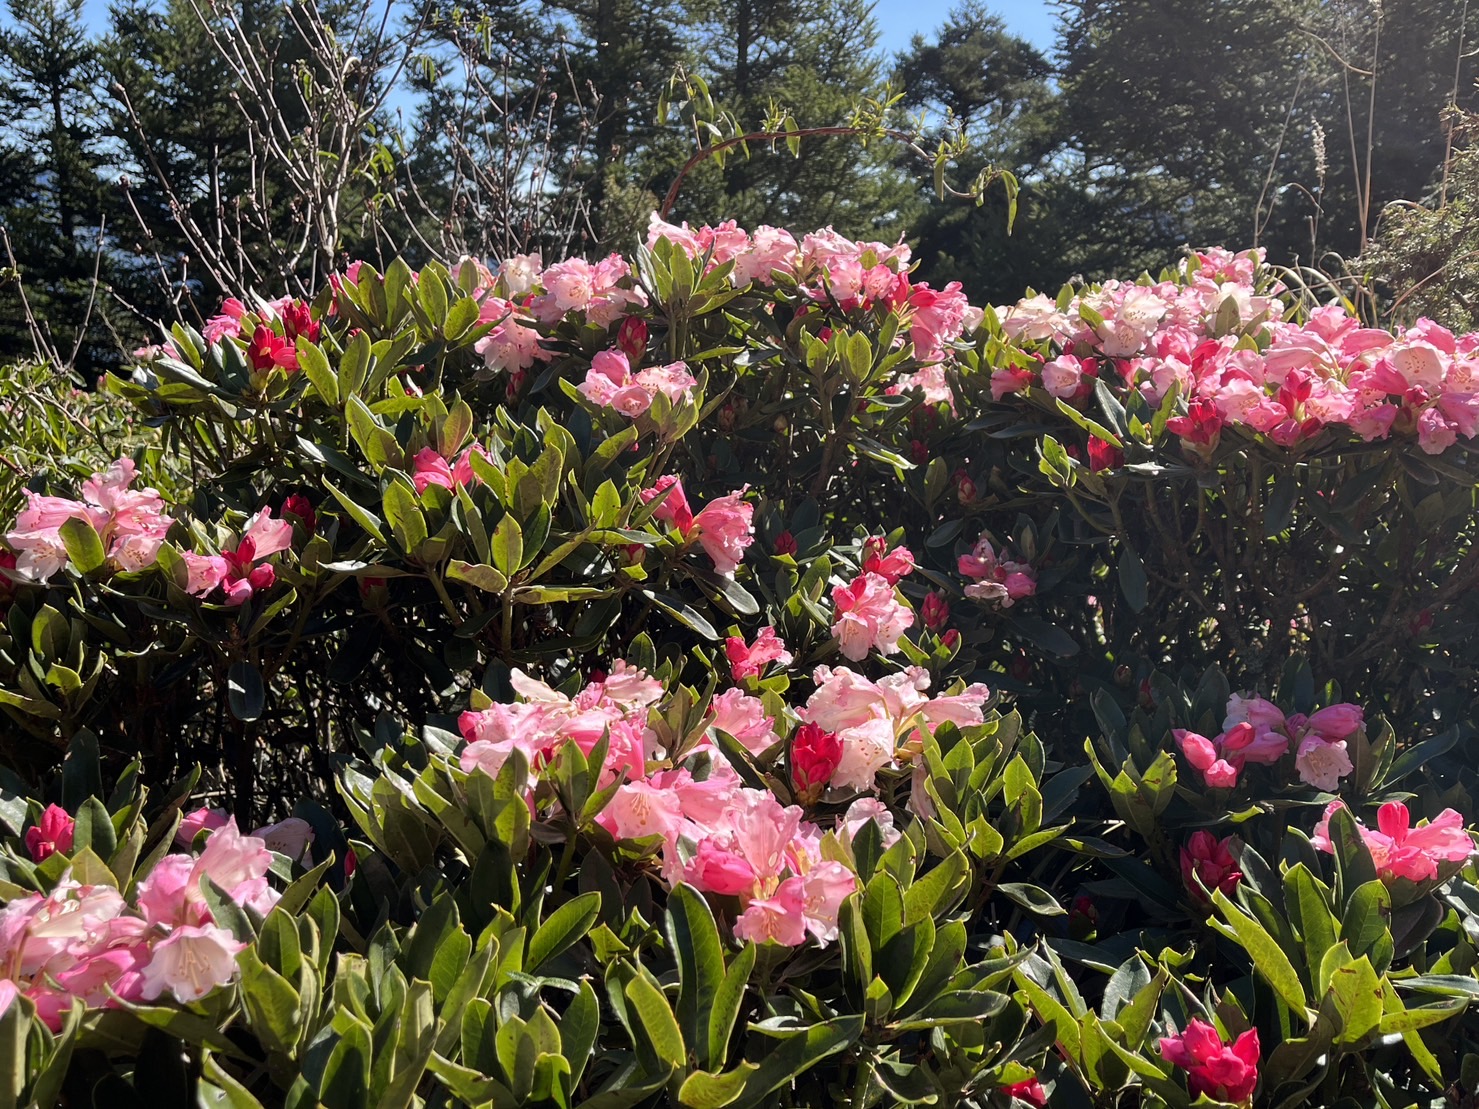 玉山杜鵑花色將隨著綻開由桃紅色漸漸轉變為粉紅、白色，在山林間為綠色植物增加更豐富的紅白相間美麗色彩